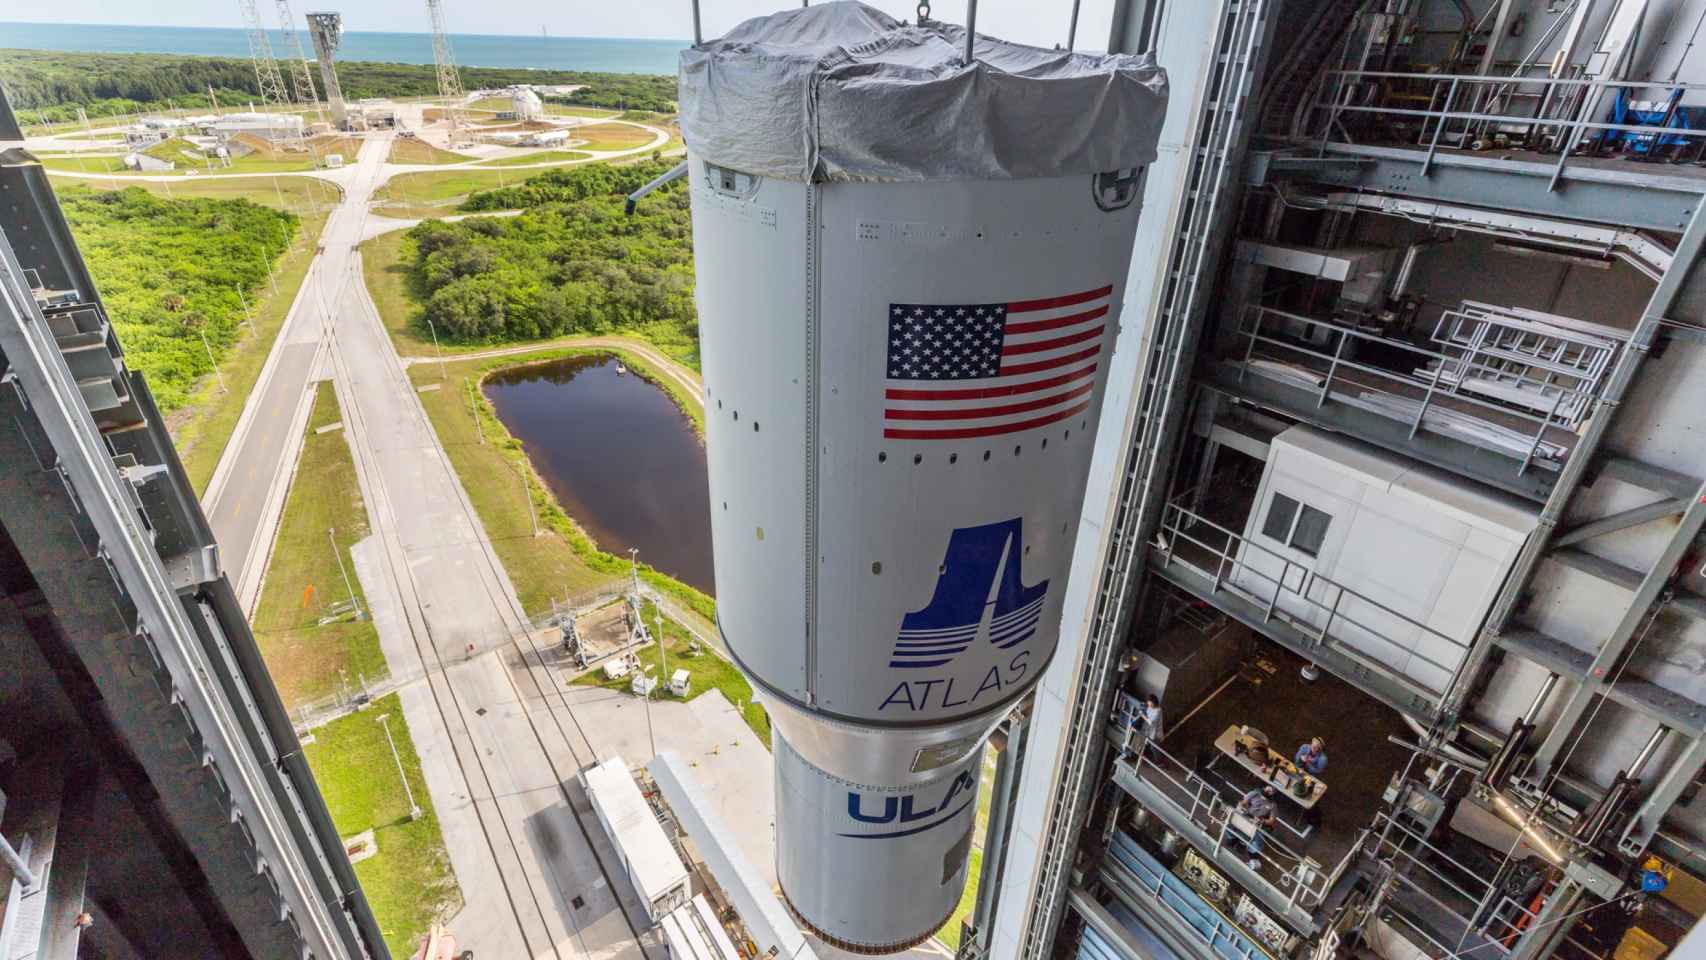 Cohete Atlas V preparado